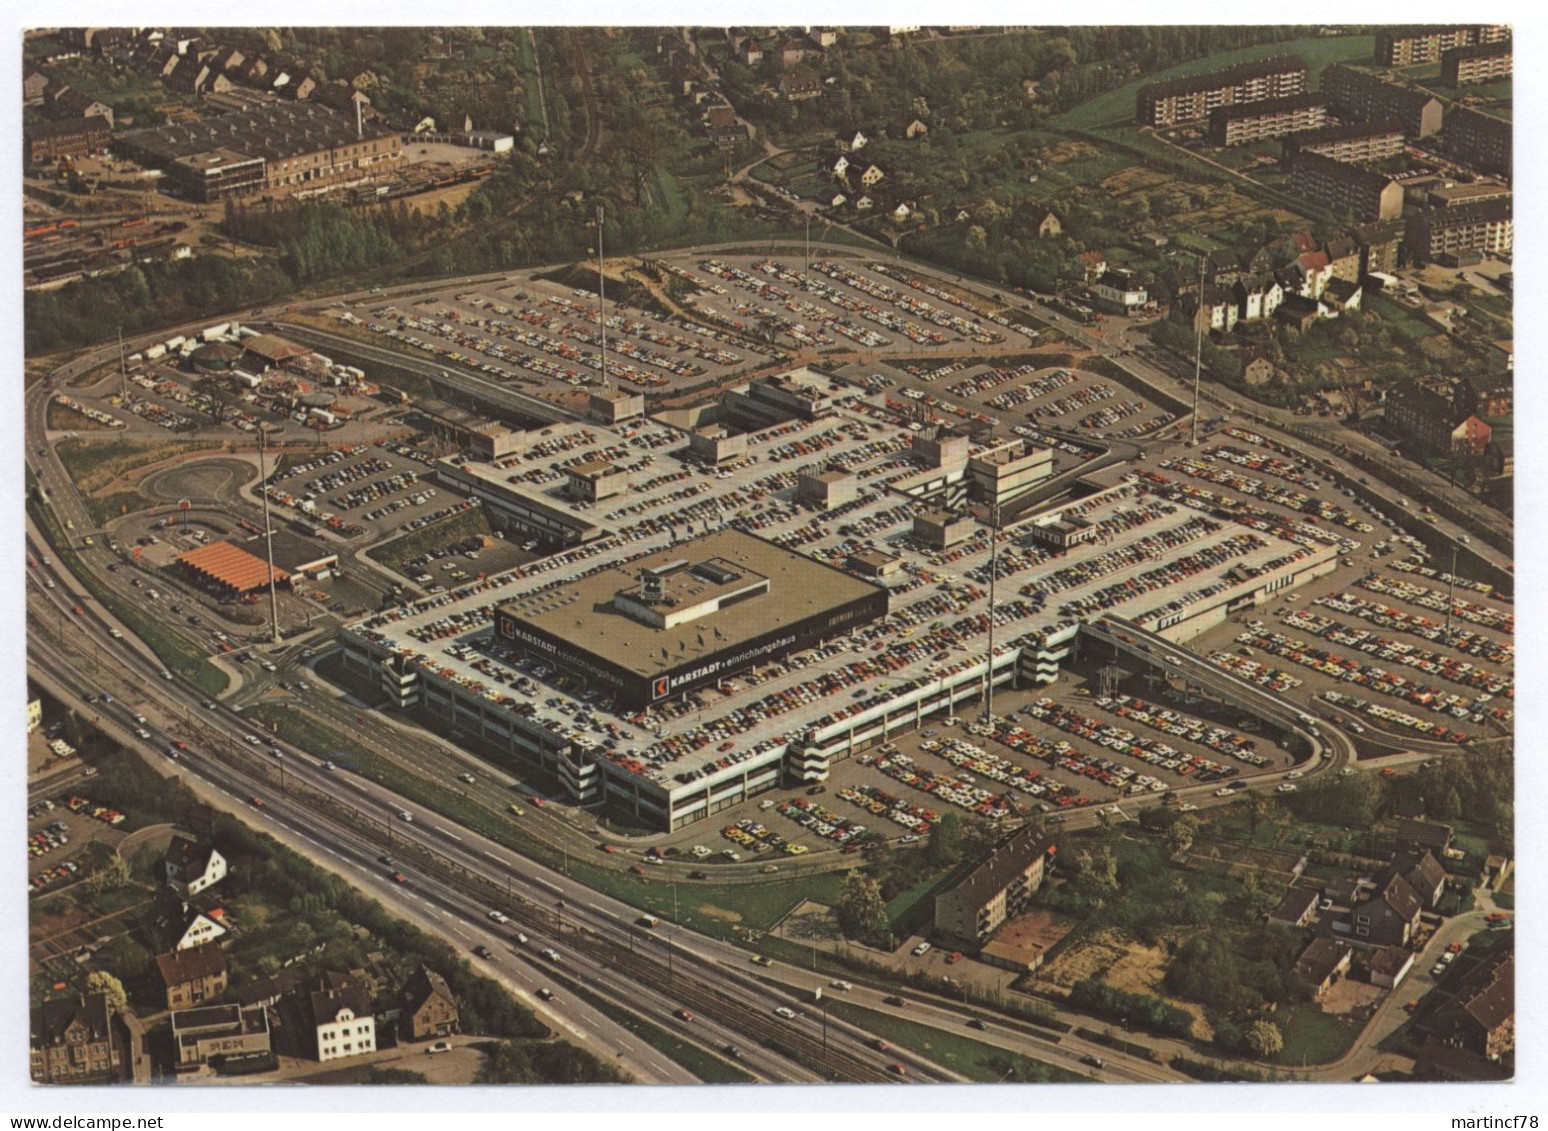 4330 Mülheim Essen An Der B 1 Rhein Ruhr Zentrum Luftbild Deutschlands Größtes Einkaufszentrum Unter Einem Dach - Muelheim A. D. Ruhr